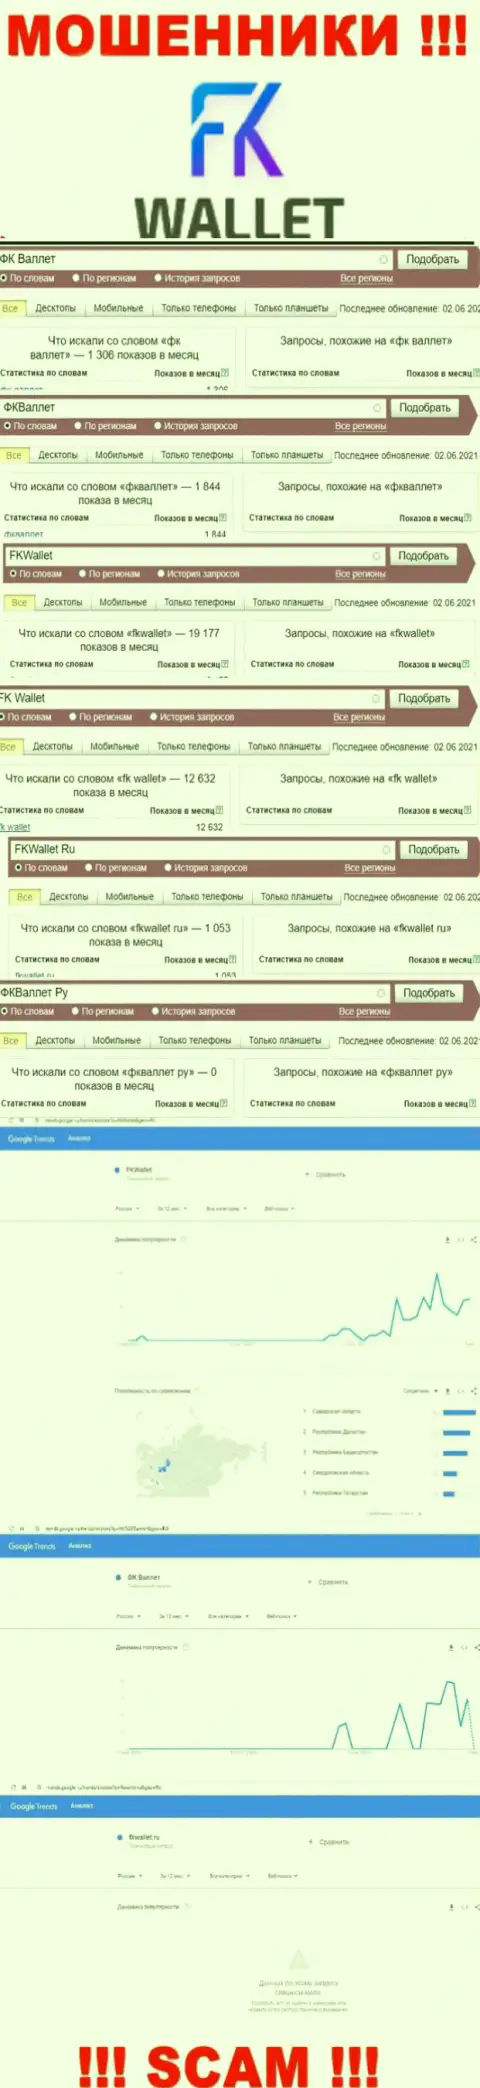 Скрин статистических данных онлайн запросов по мошеннической компании FK Wallet